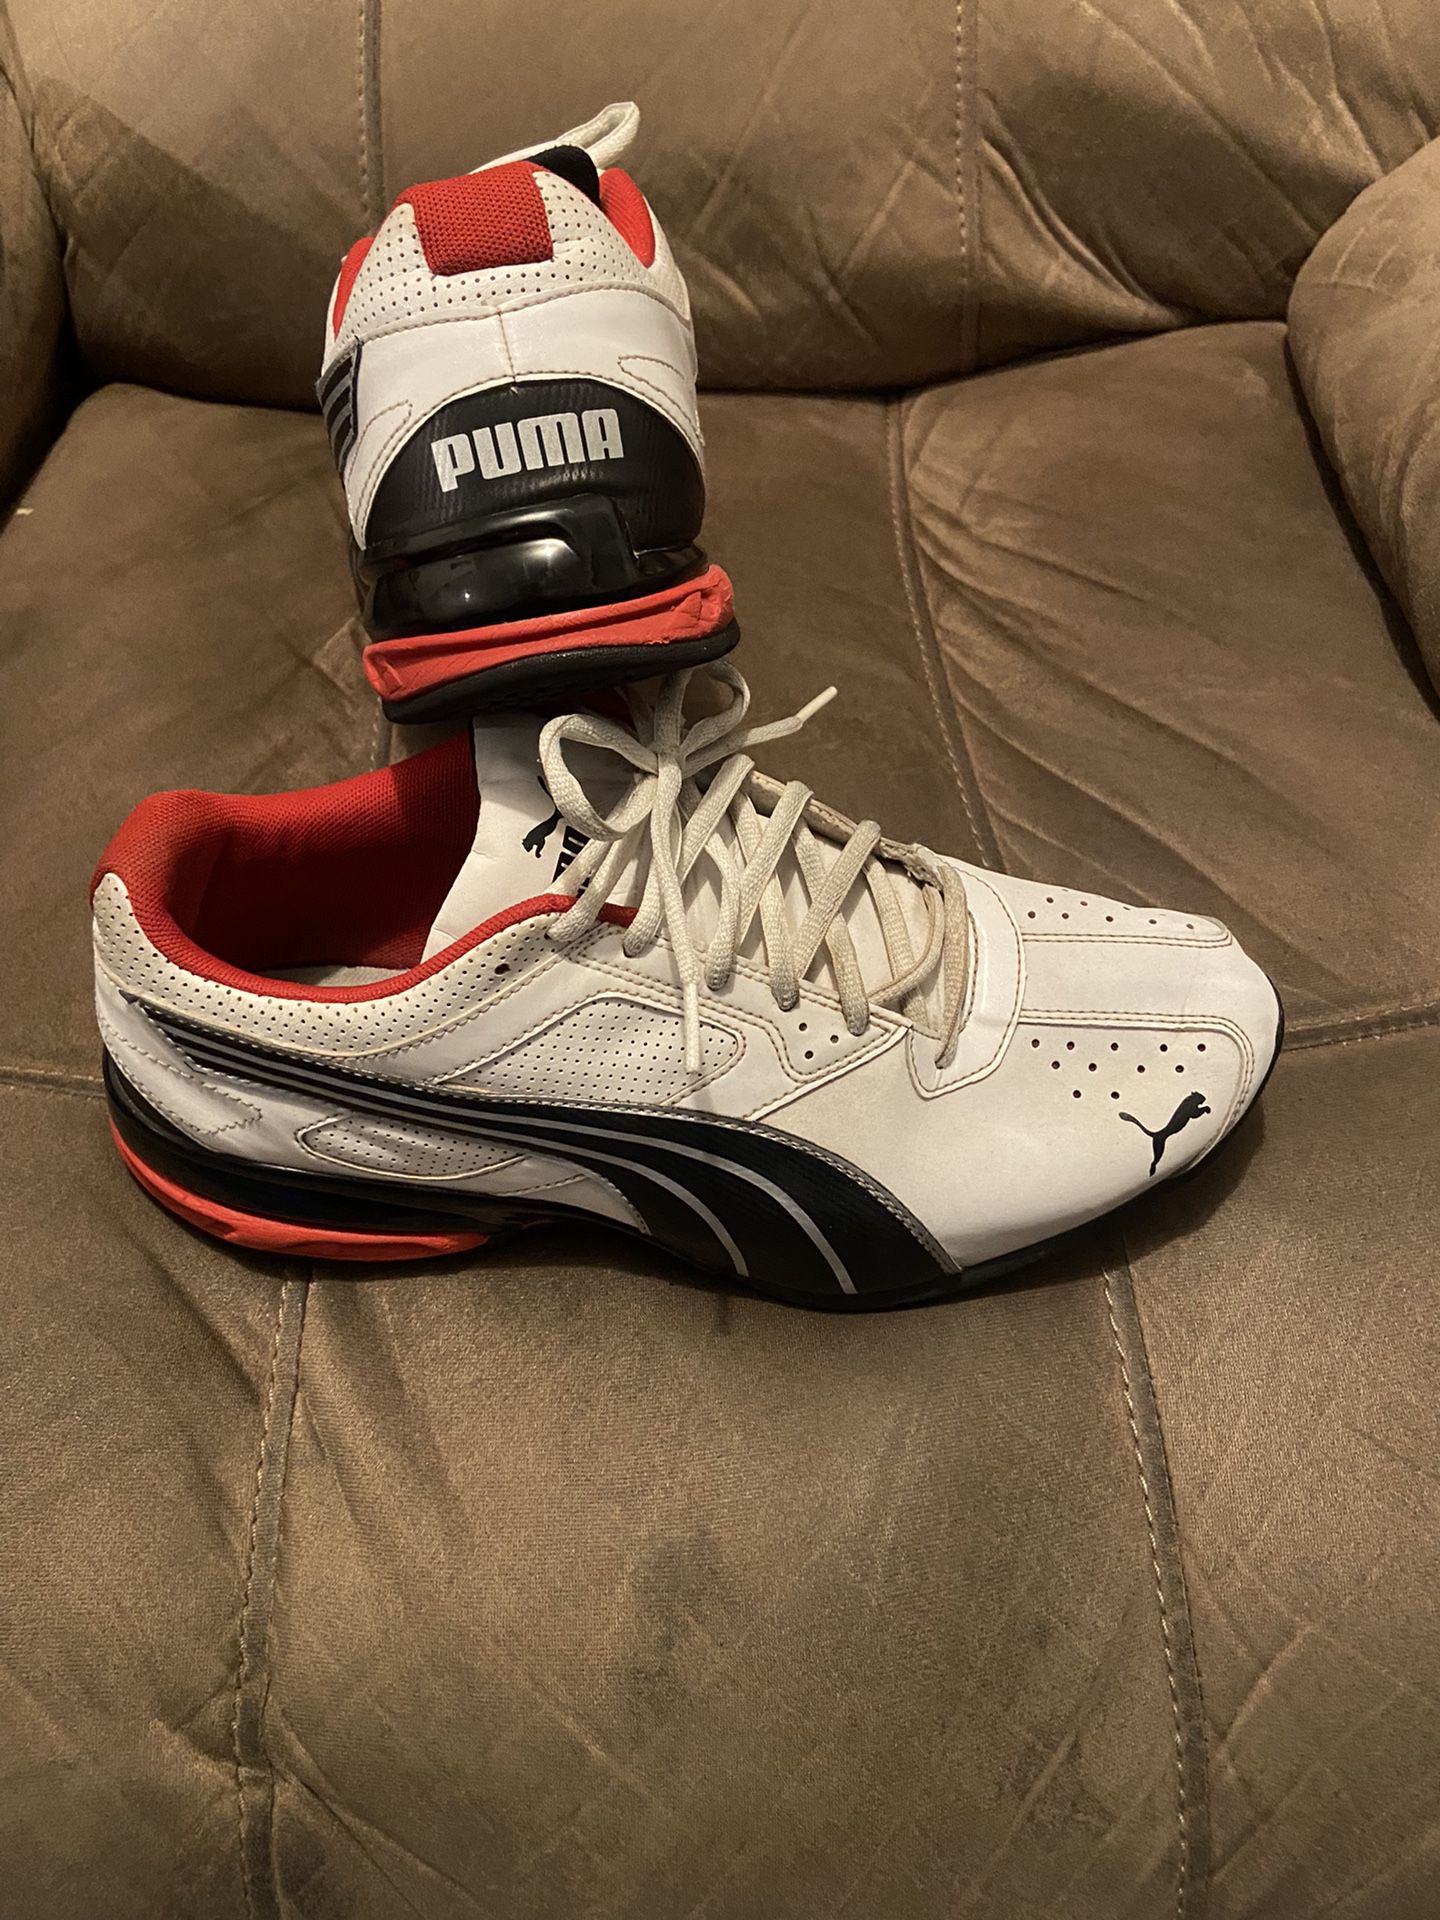 Pumas Men’s Shoes ( Size 11 )